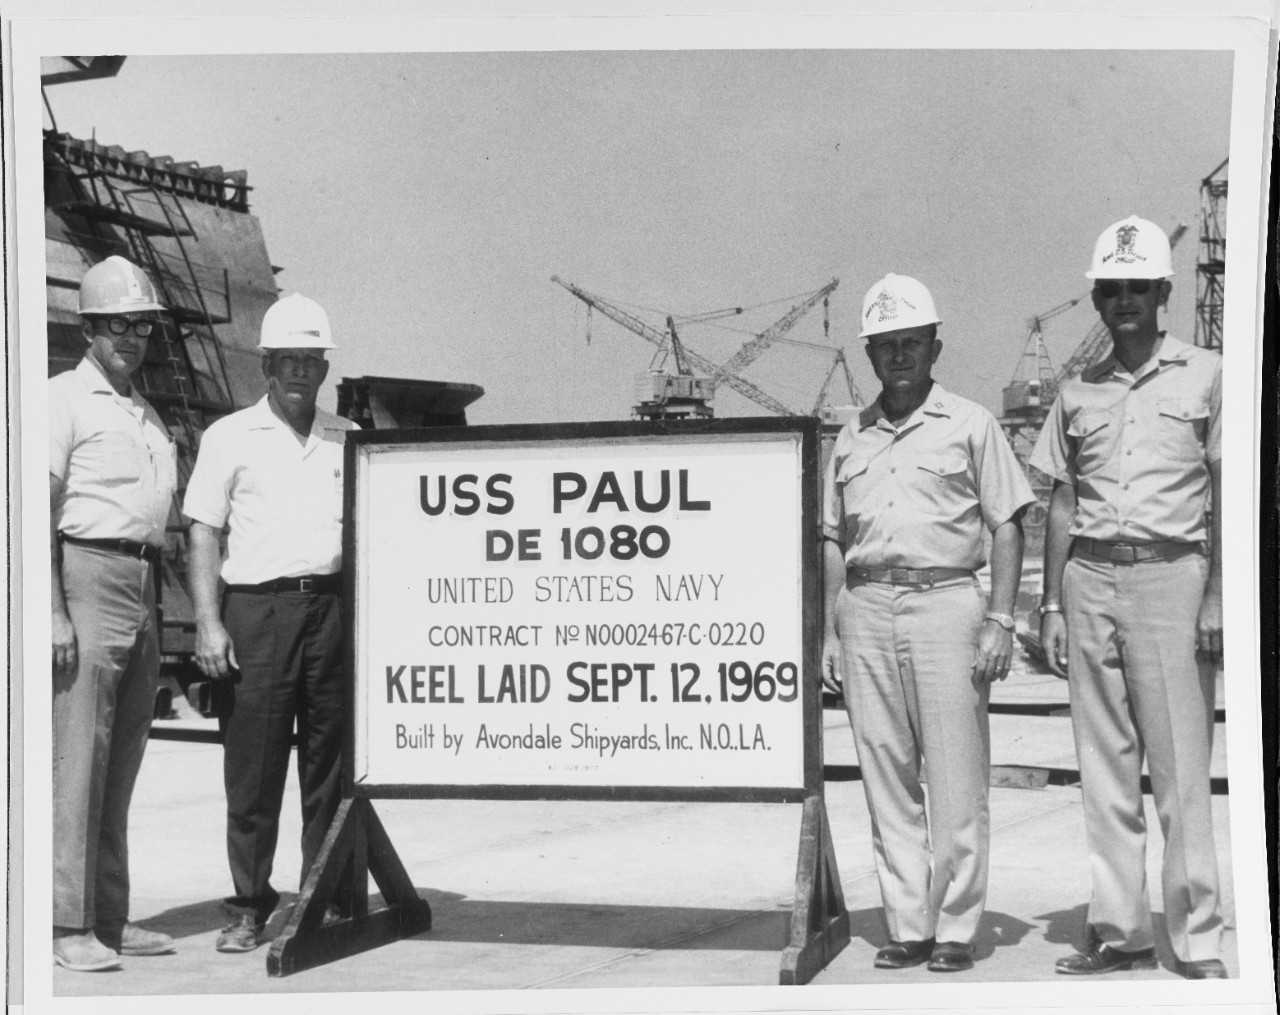 USS PAUL (DE-1080)